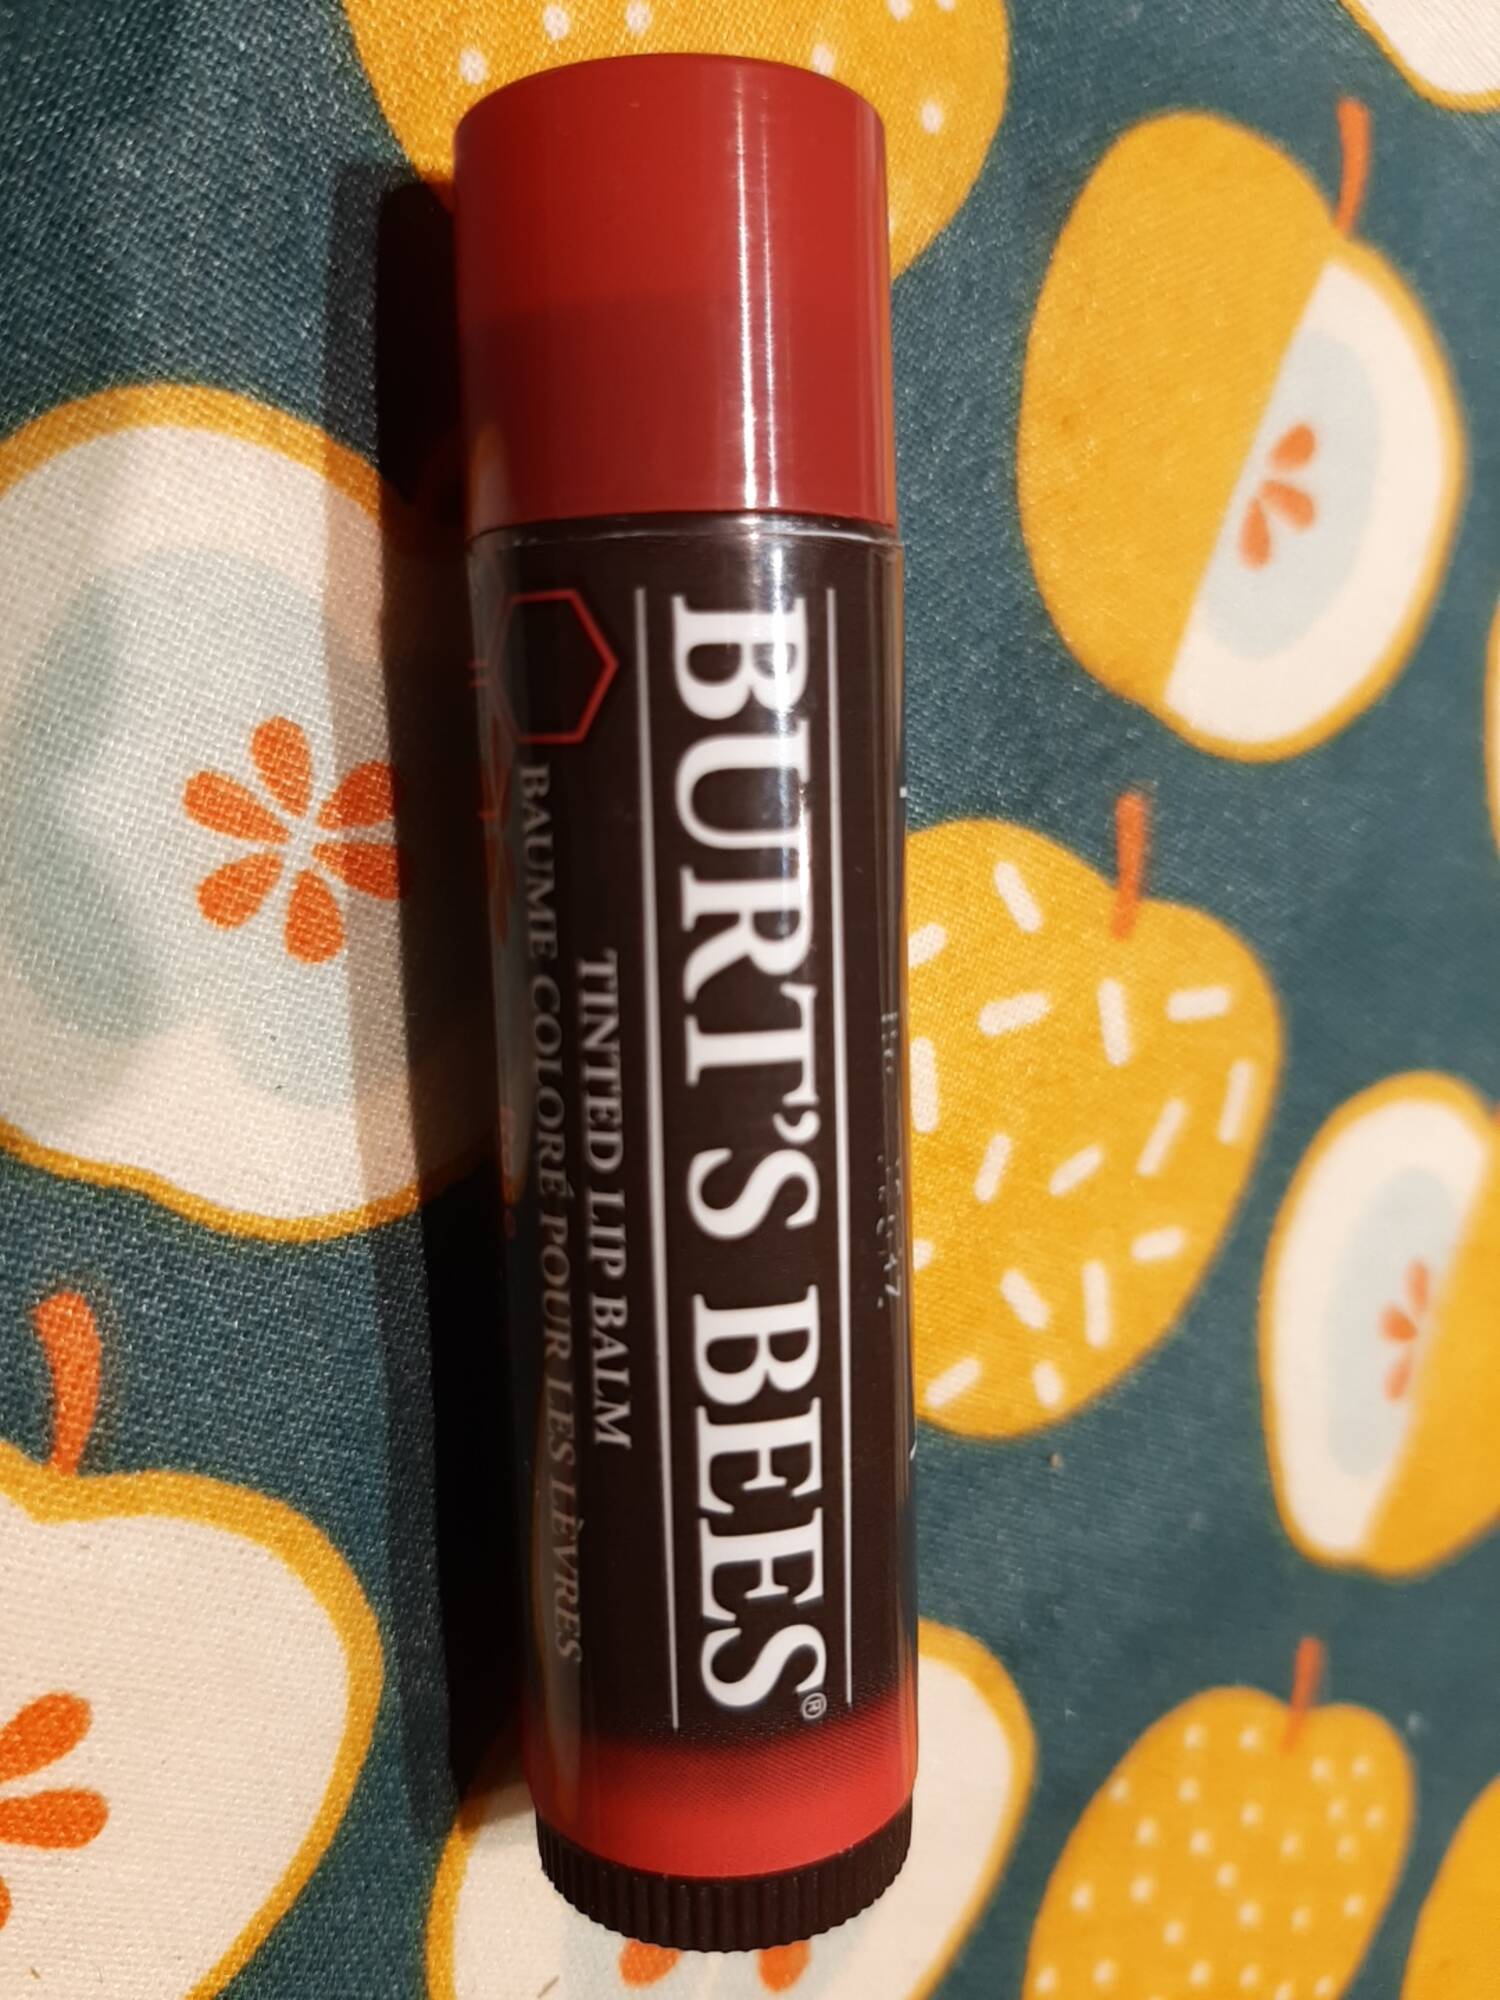 BURT'S BEES - Baume coloré pour les lèvres teinte rose